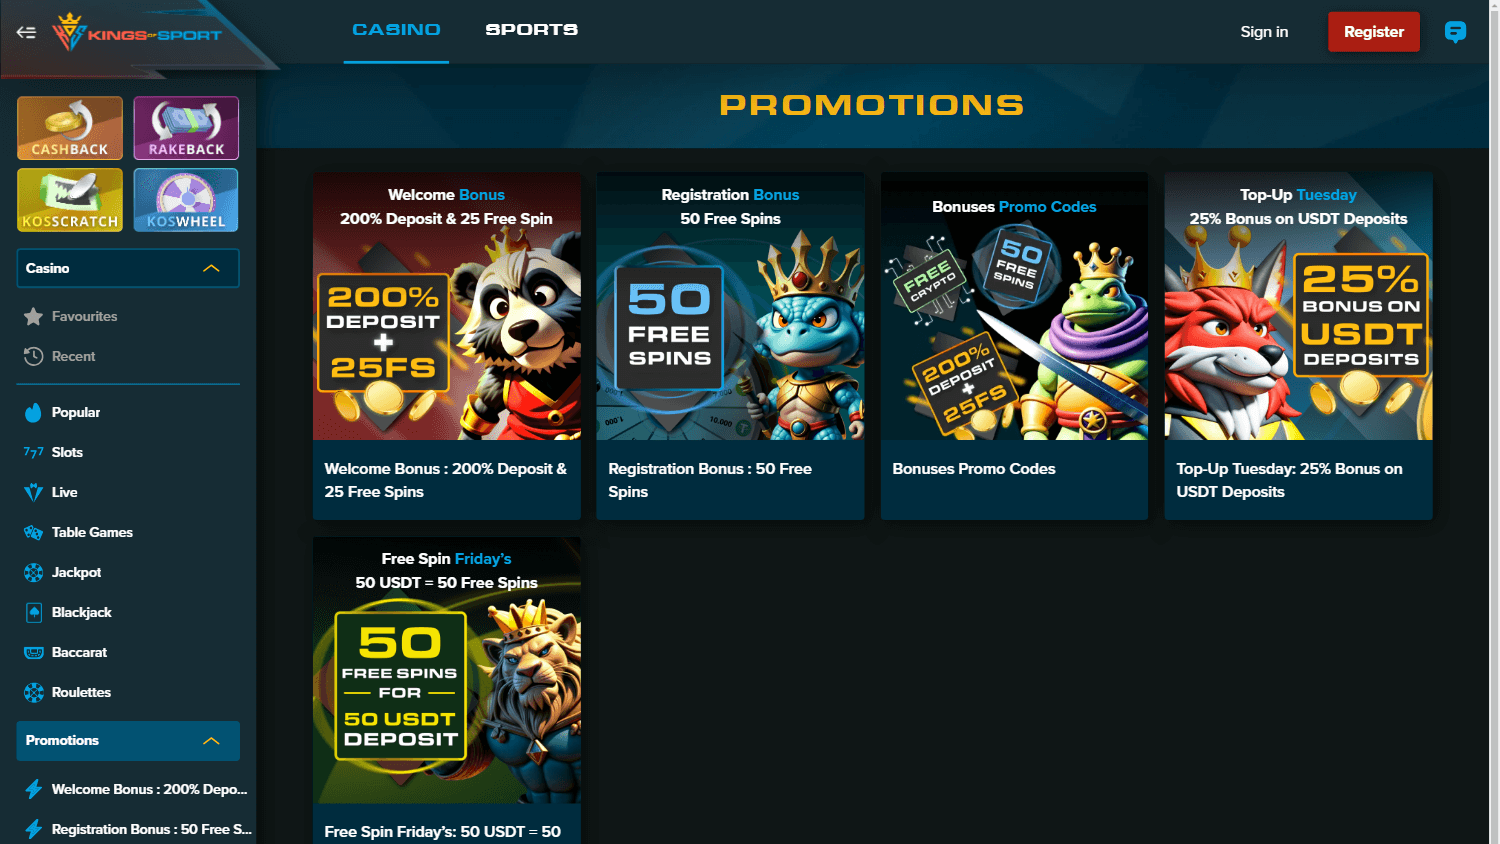 kings_of_sport_casino_promotions_desktop